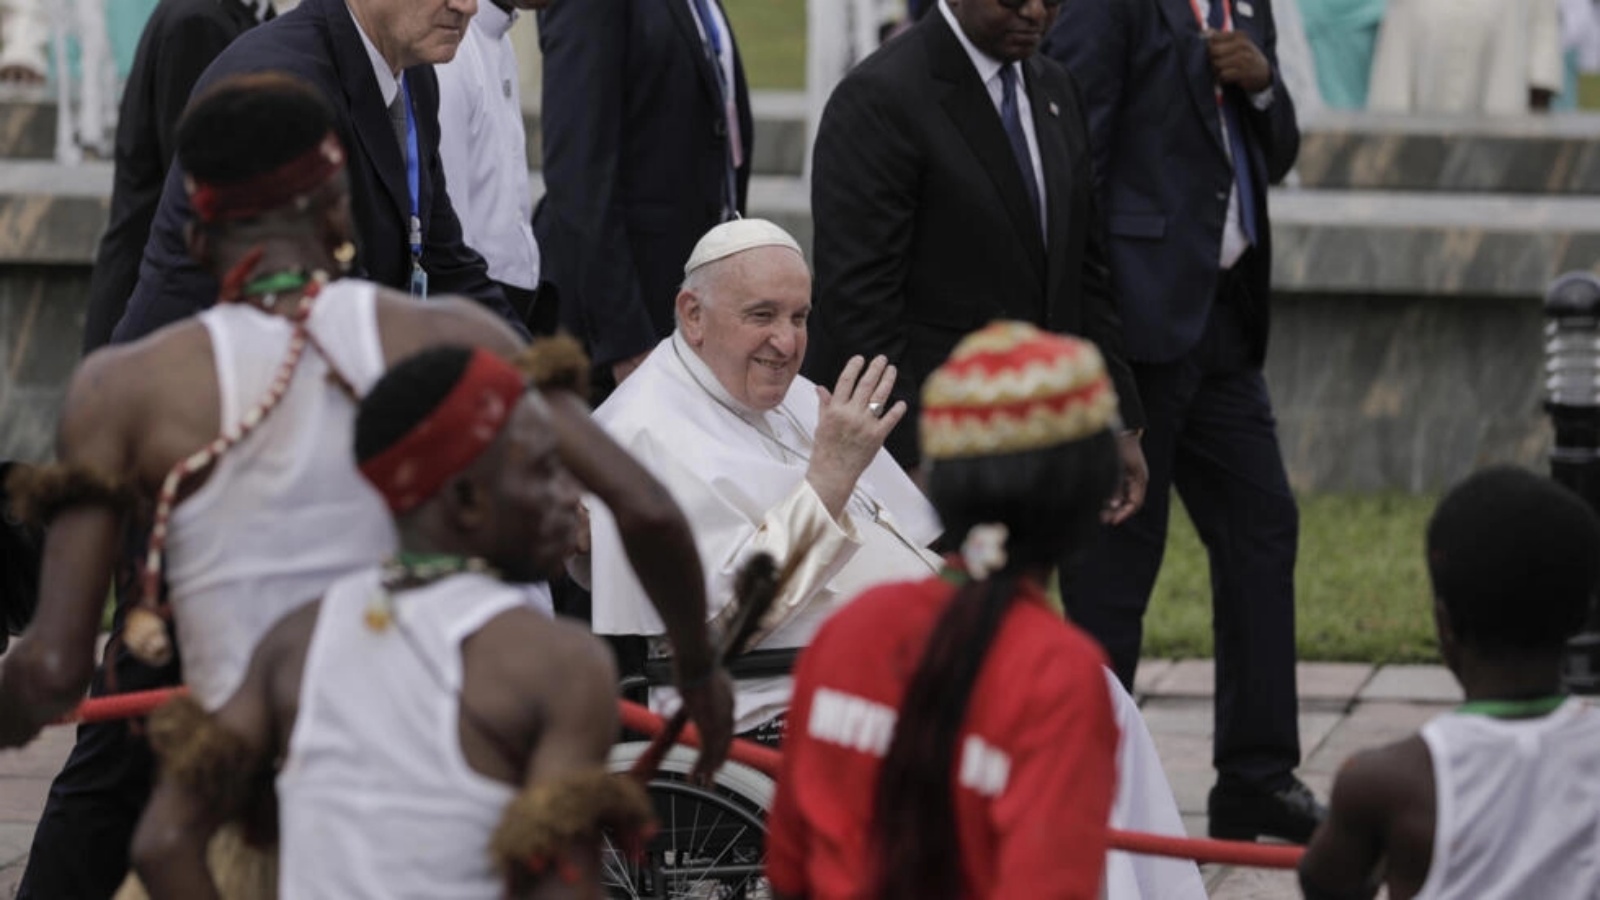 البابا فرنسيس على كرسي متحرك يلوح بيده عند وصوله إلى مطار ندجيلي الدولي في كينشاسا، جمهورية الكونغو الديموقراطية، في 31 يناير 2023